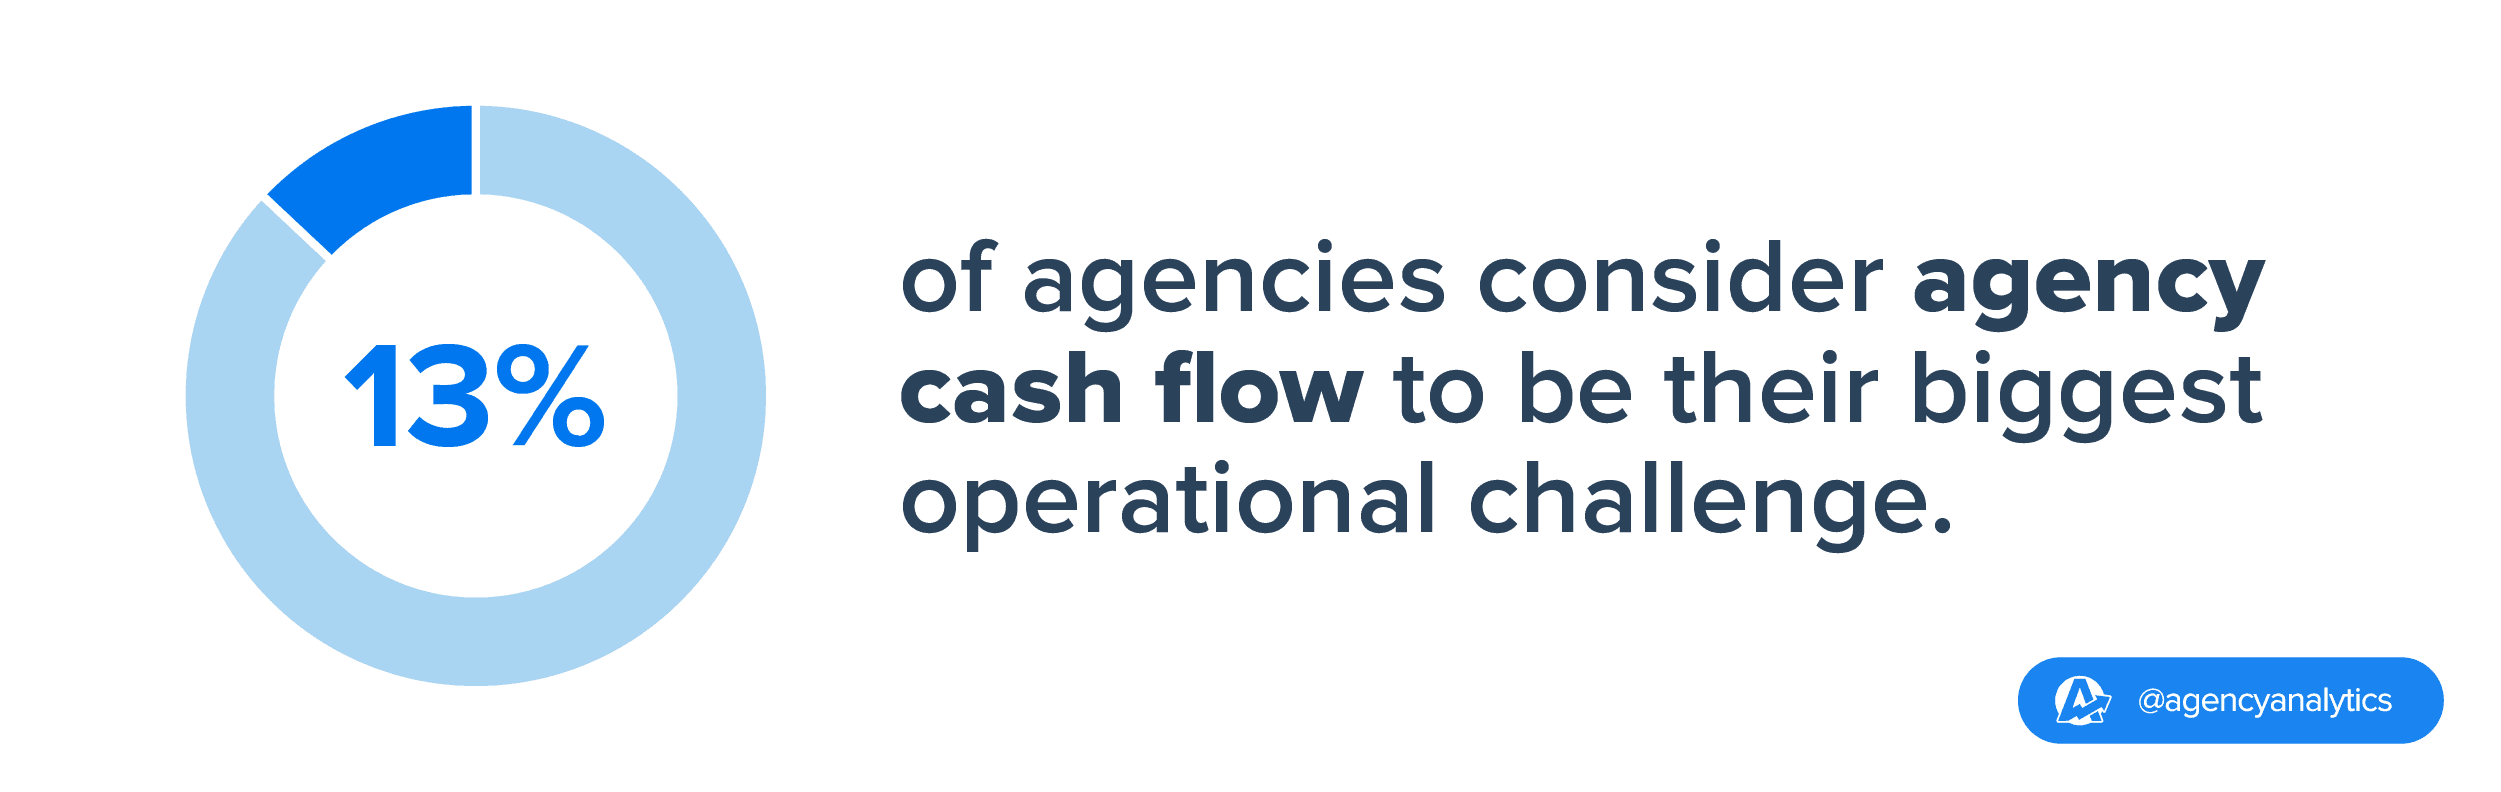 agency concern cash flow stat